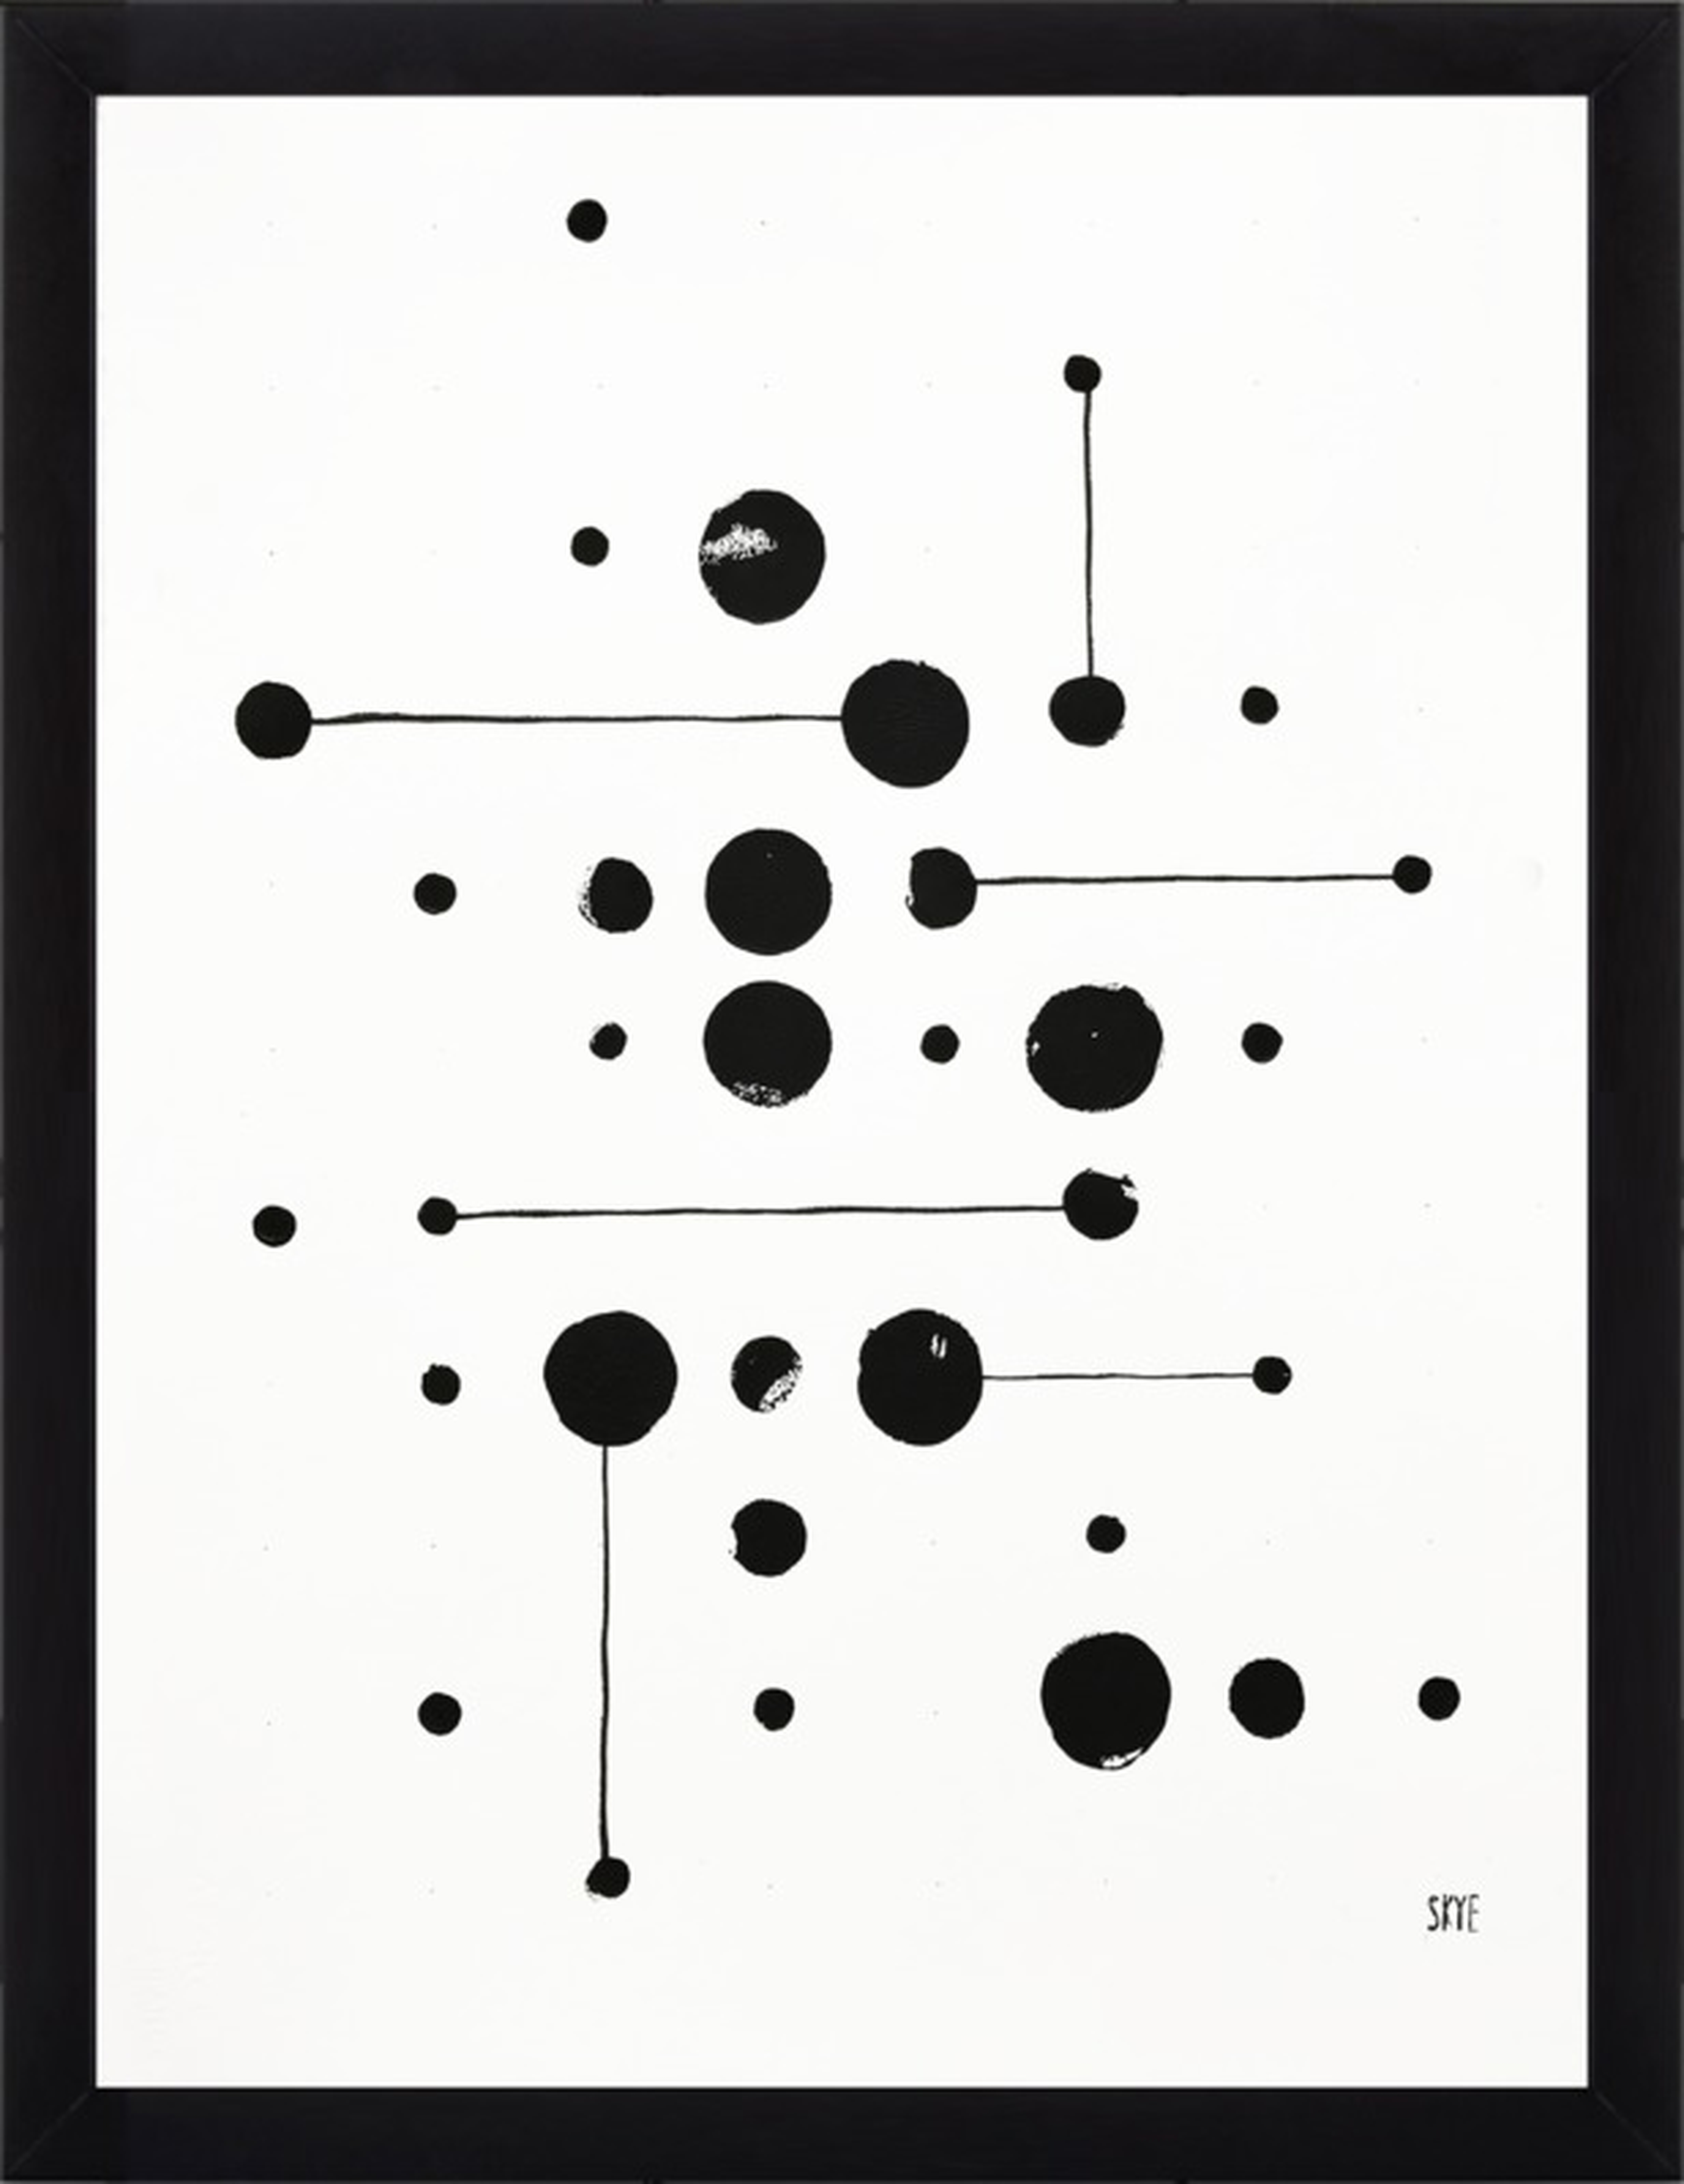 34 Dots 6 Lines - Black Wood - No Matte - 16"x20" - Artfully Walls